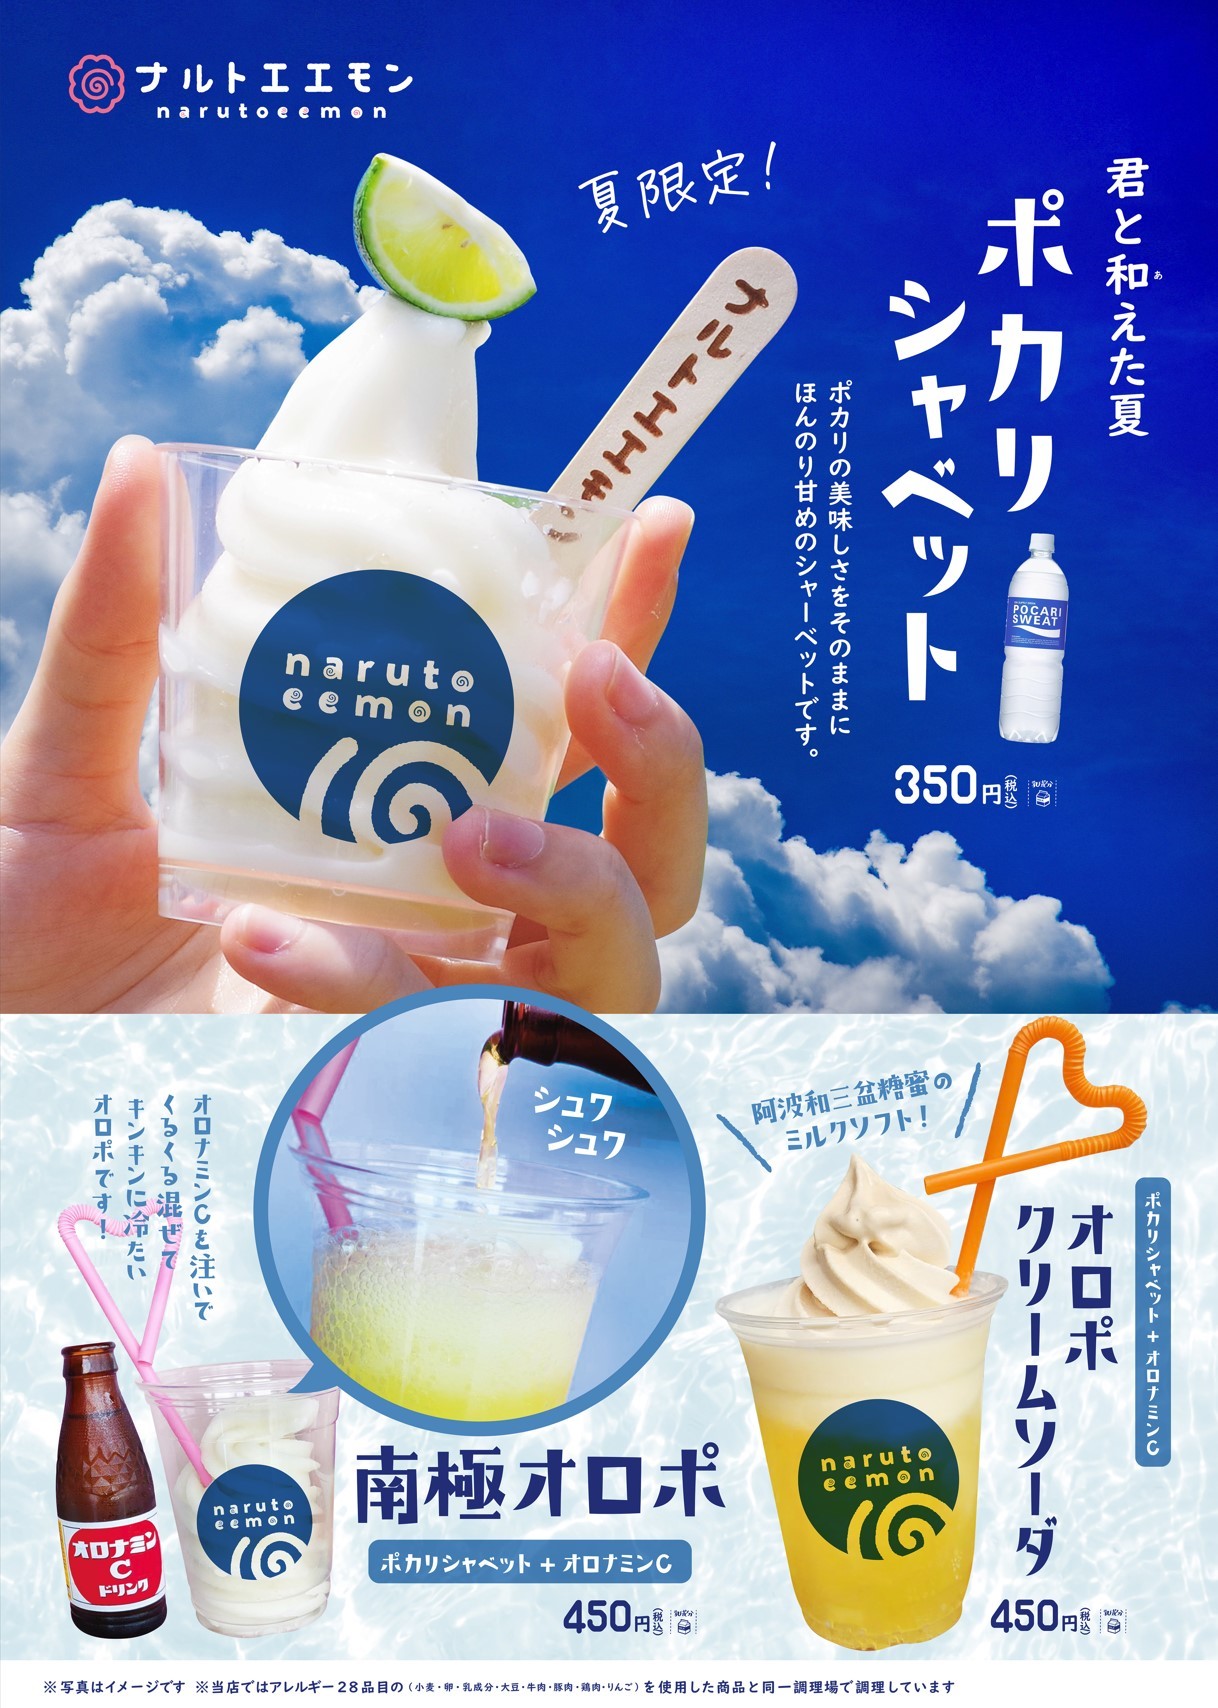 武道家に贈る昇段の酒「鍛錬」ビンテージ純米大吟醸 2021の
販売を開始しました